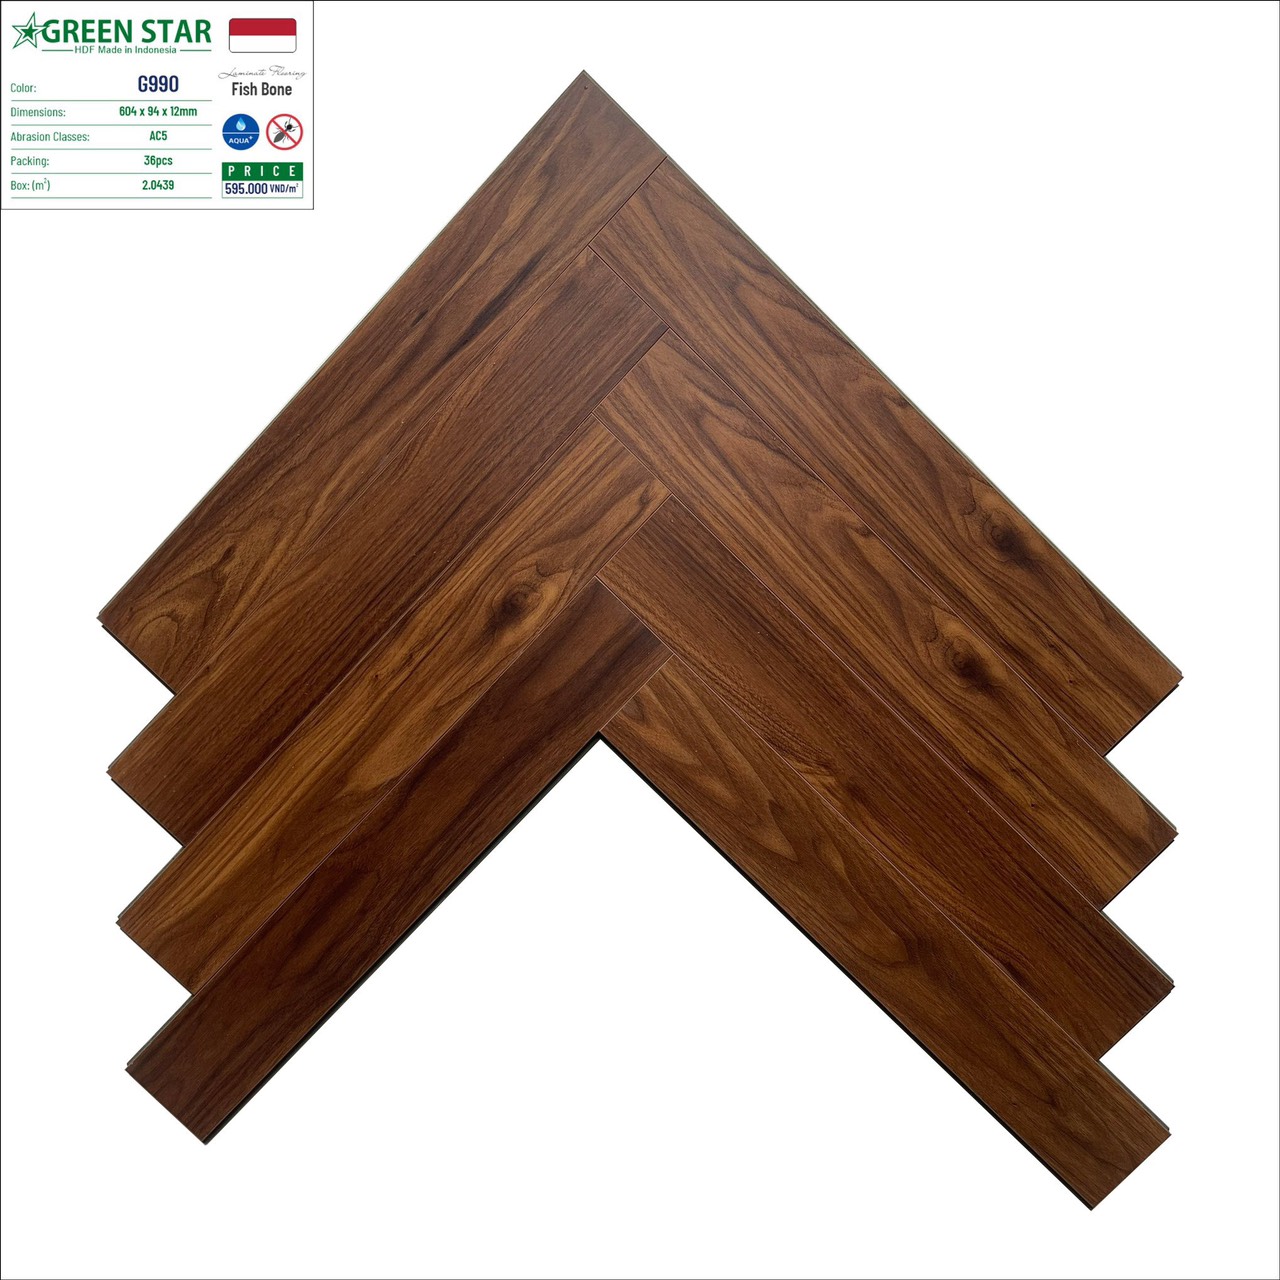 Sàn gỗ xương cá Green Star - G990 - Sàn gỗ Sơn Thái